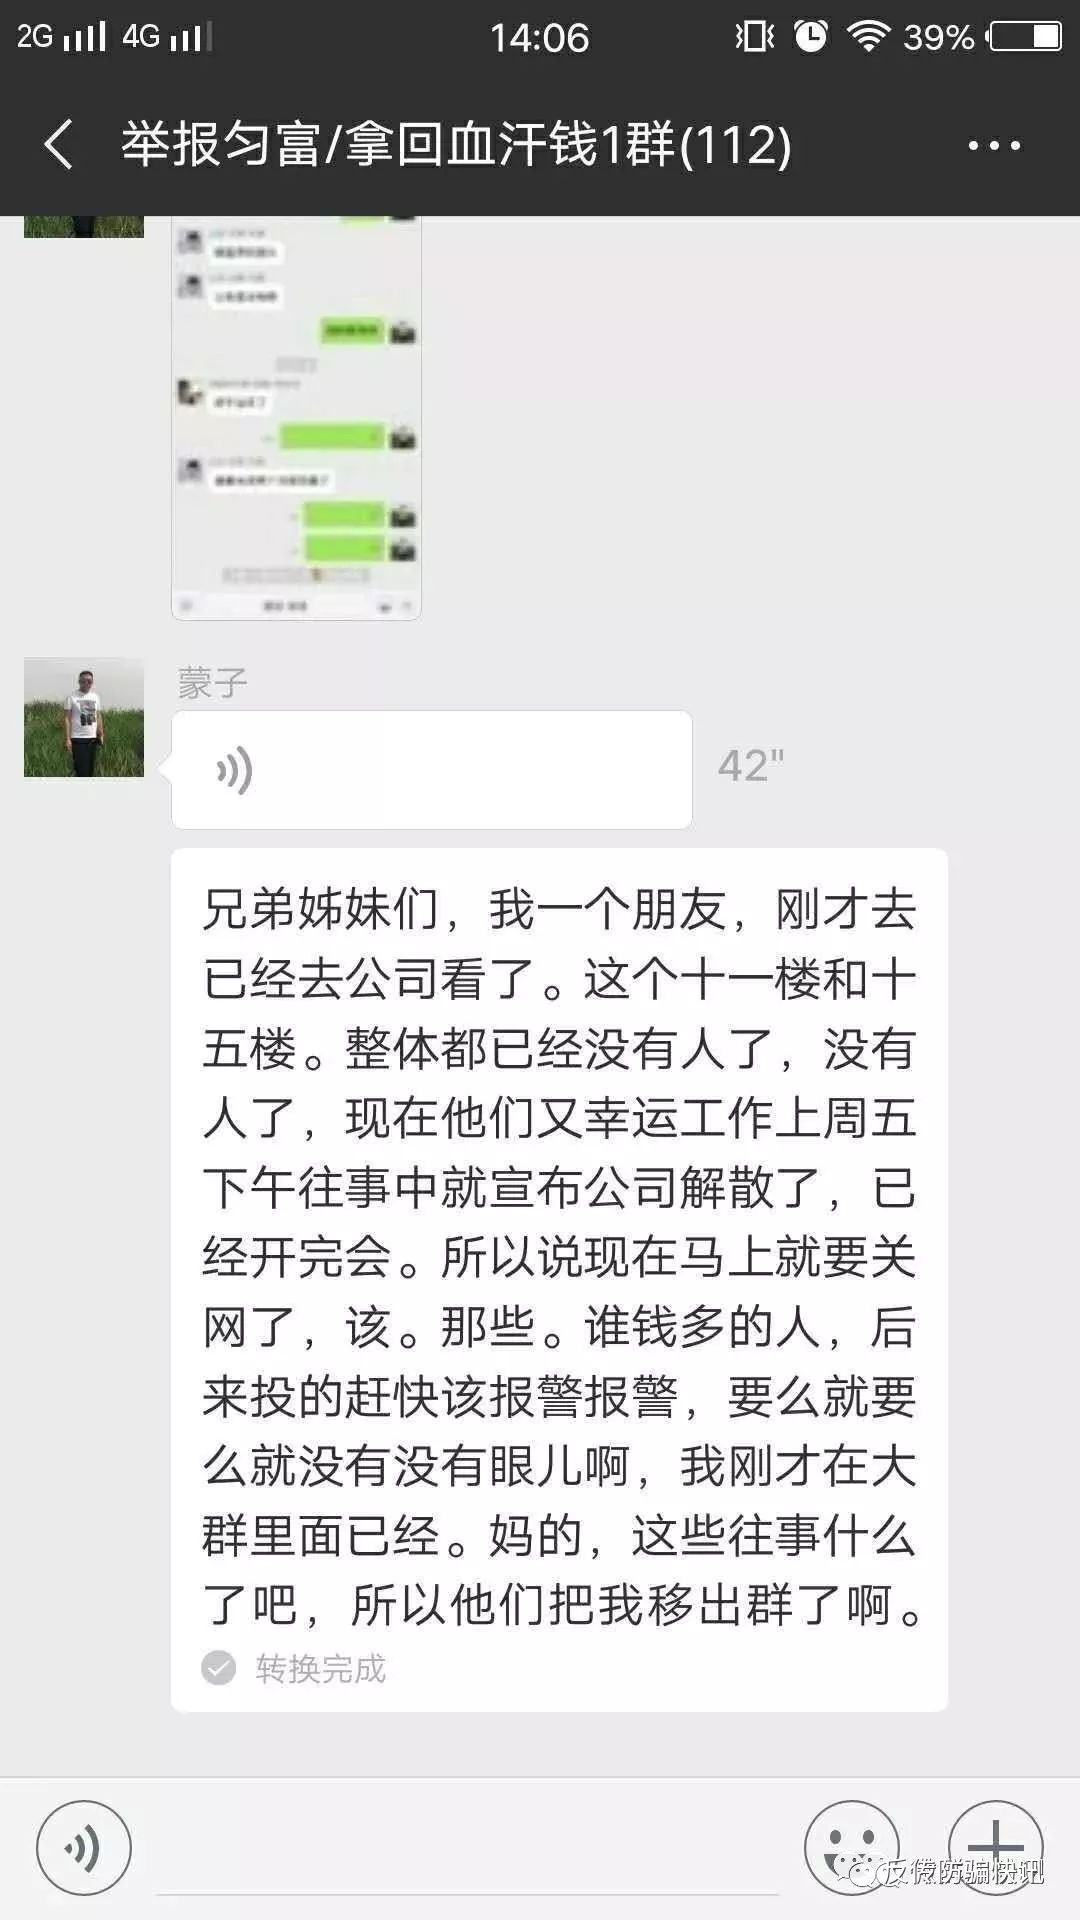 模仿“云联惠”的深圳“匀富尚品”公司被警方查封 投资者恐血本无归